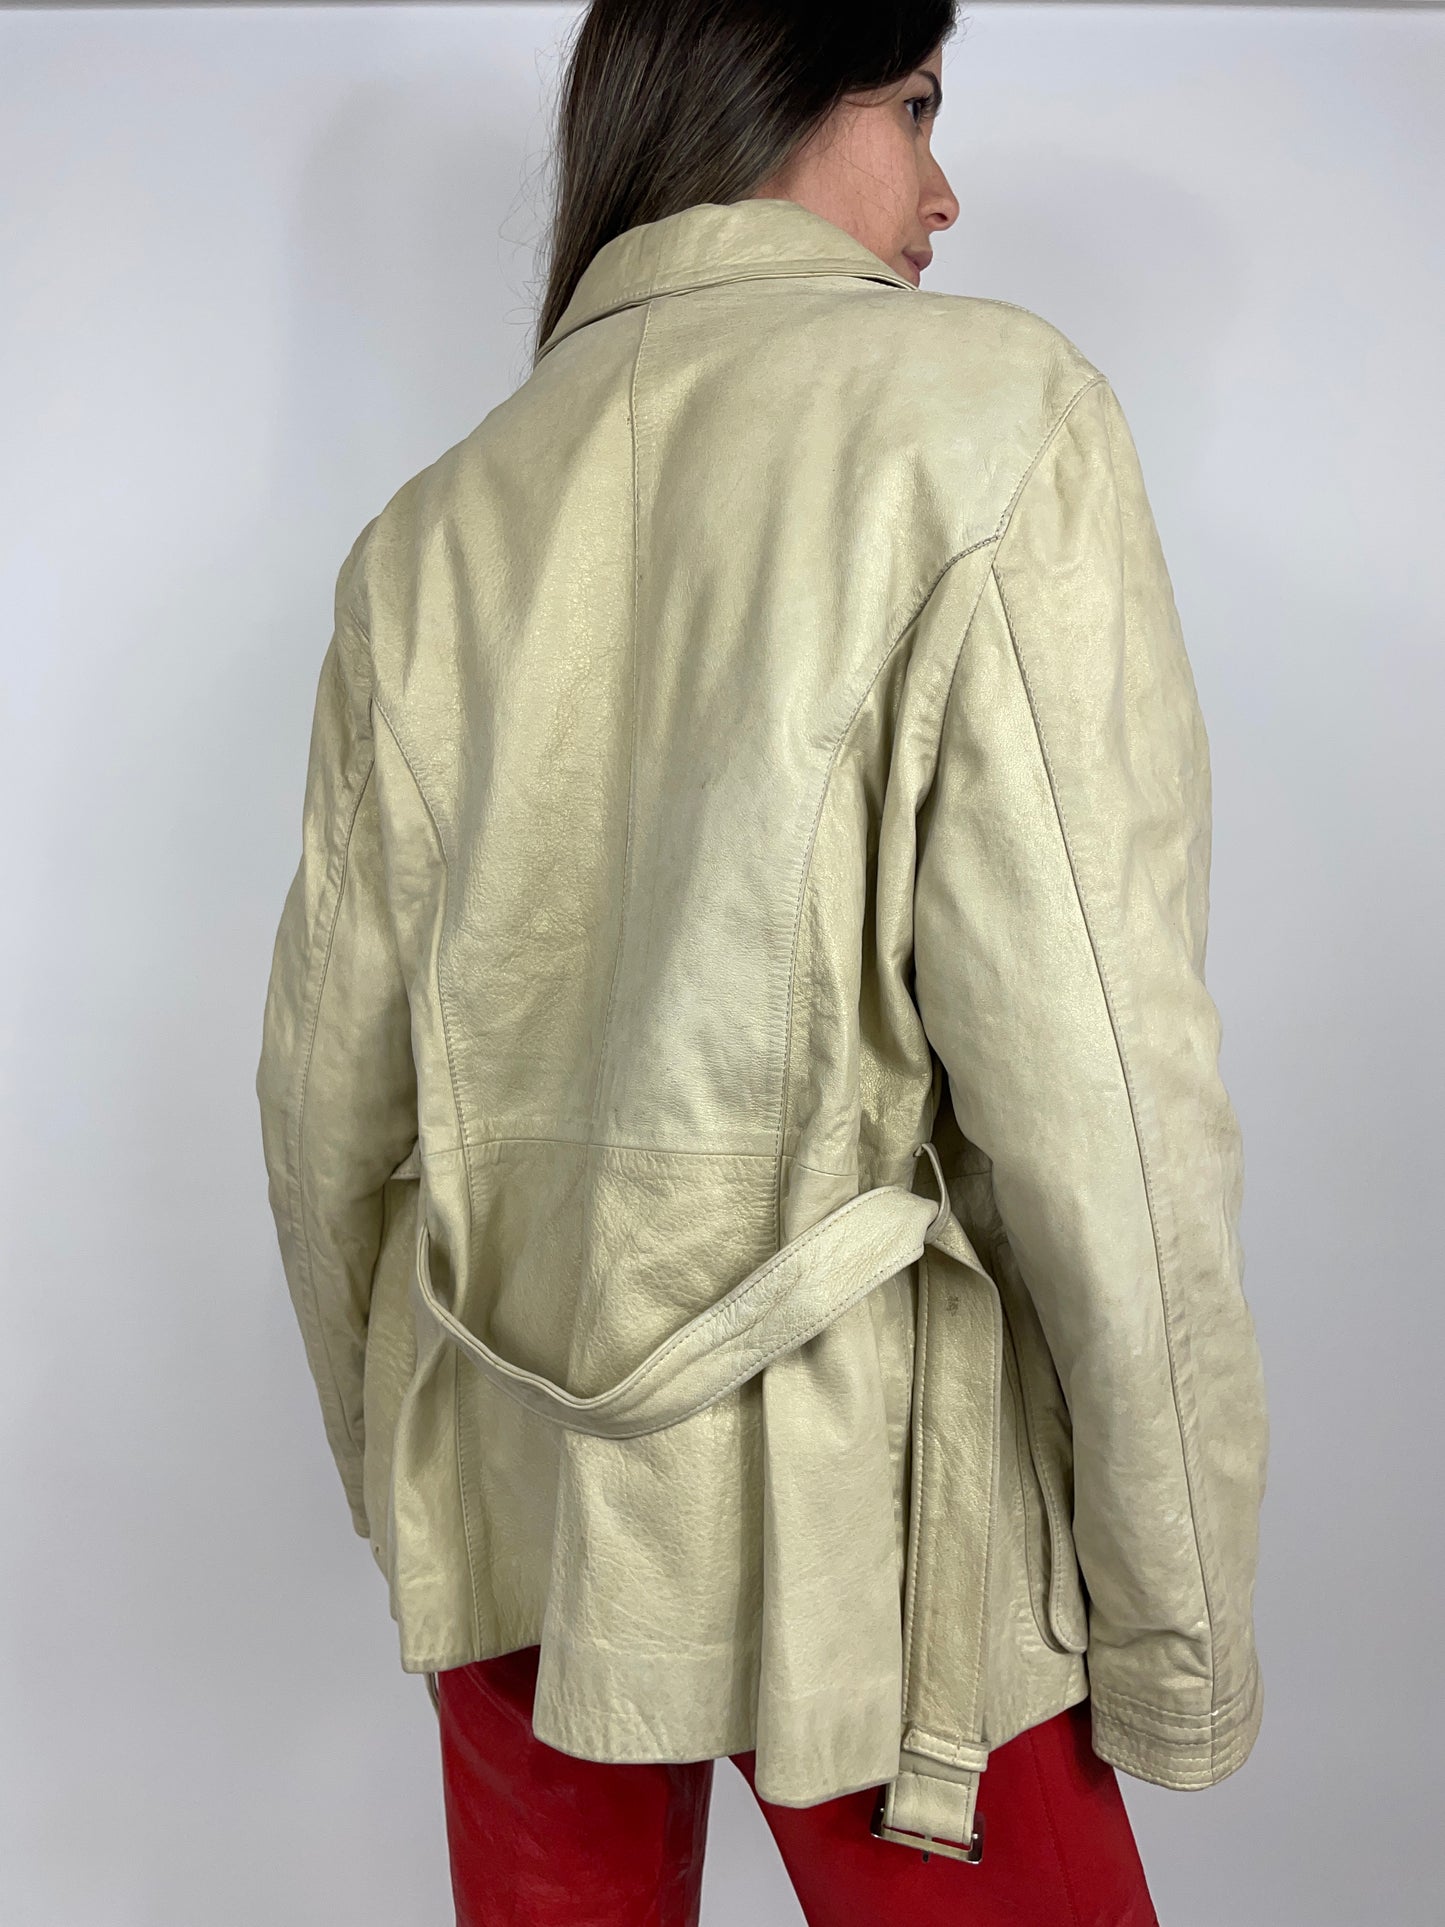 Leather Jacket 1970s